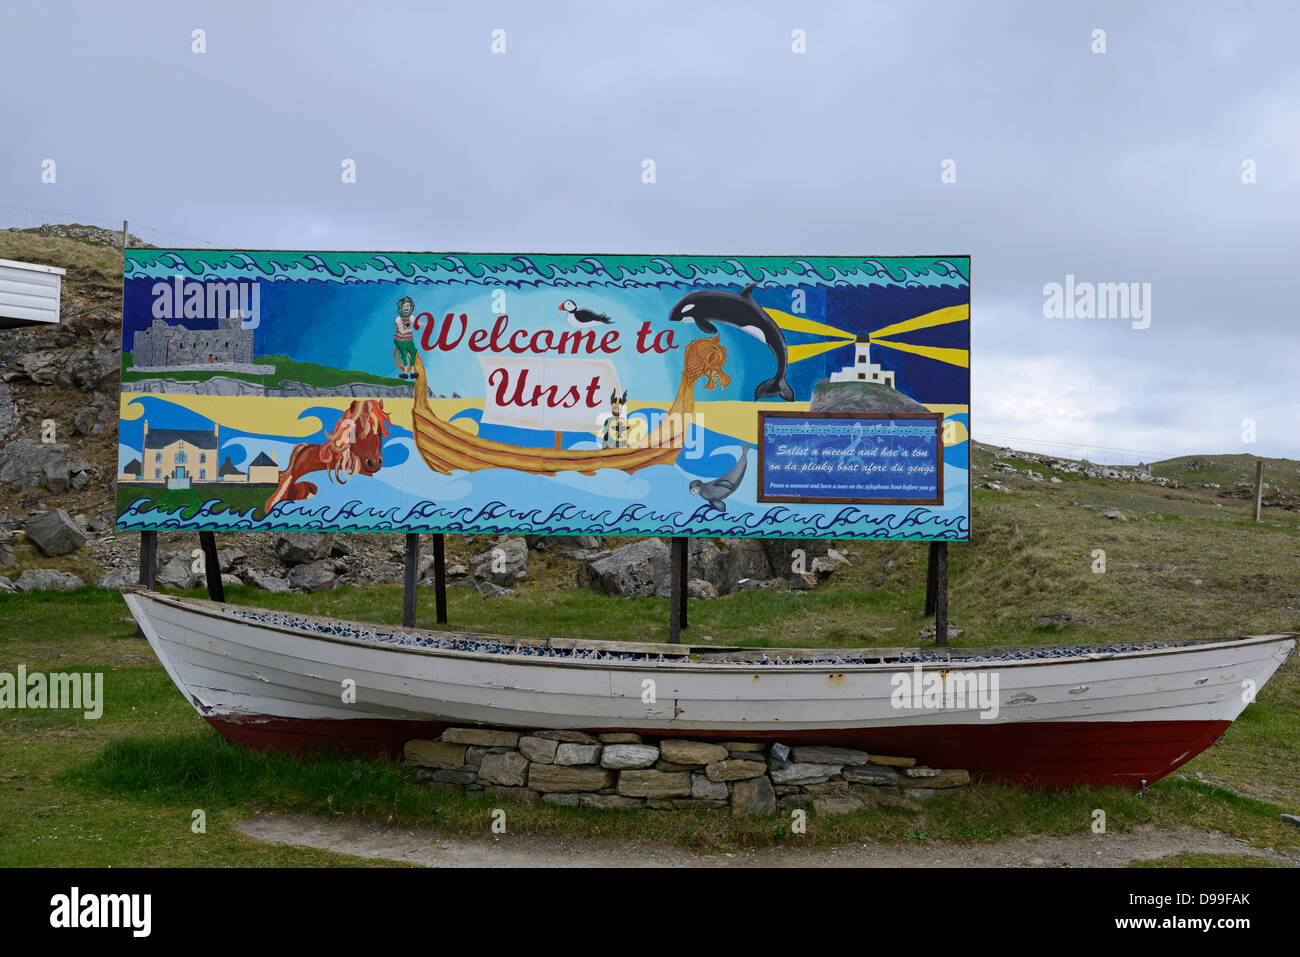 Unst, Shetland, Schottland. Willkommen Sie Schilder, Juni 2013. Neues Zeichen von lokalen Schulkindern gemalt. Stockfoto